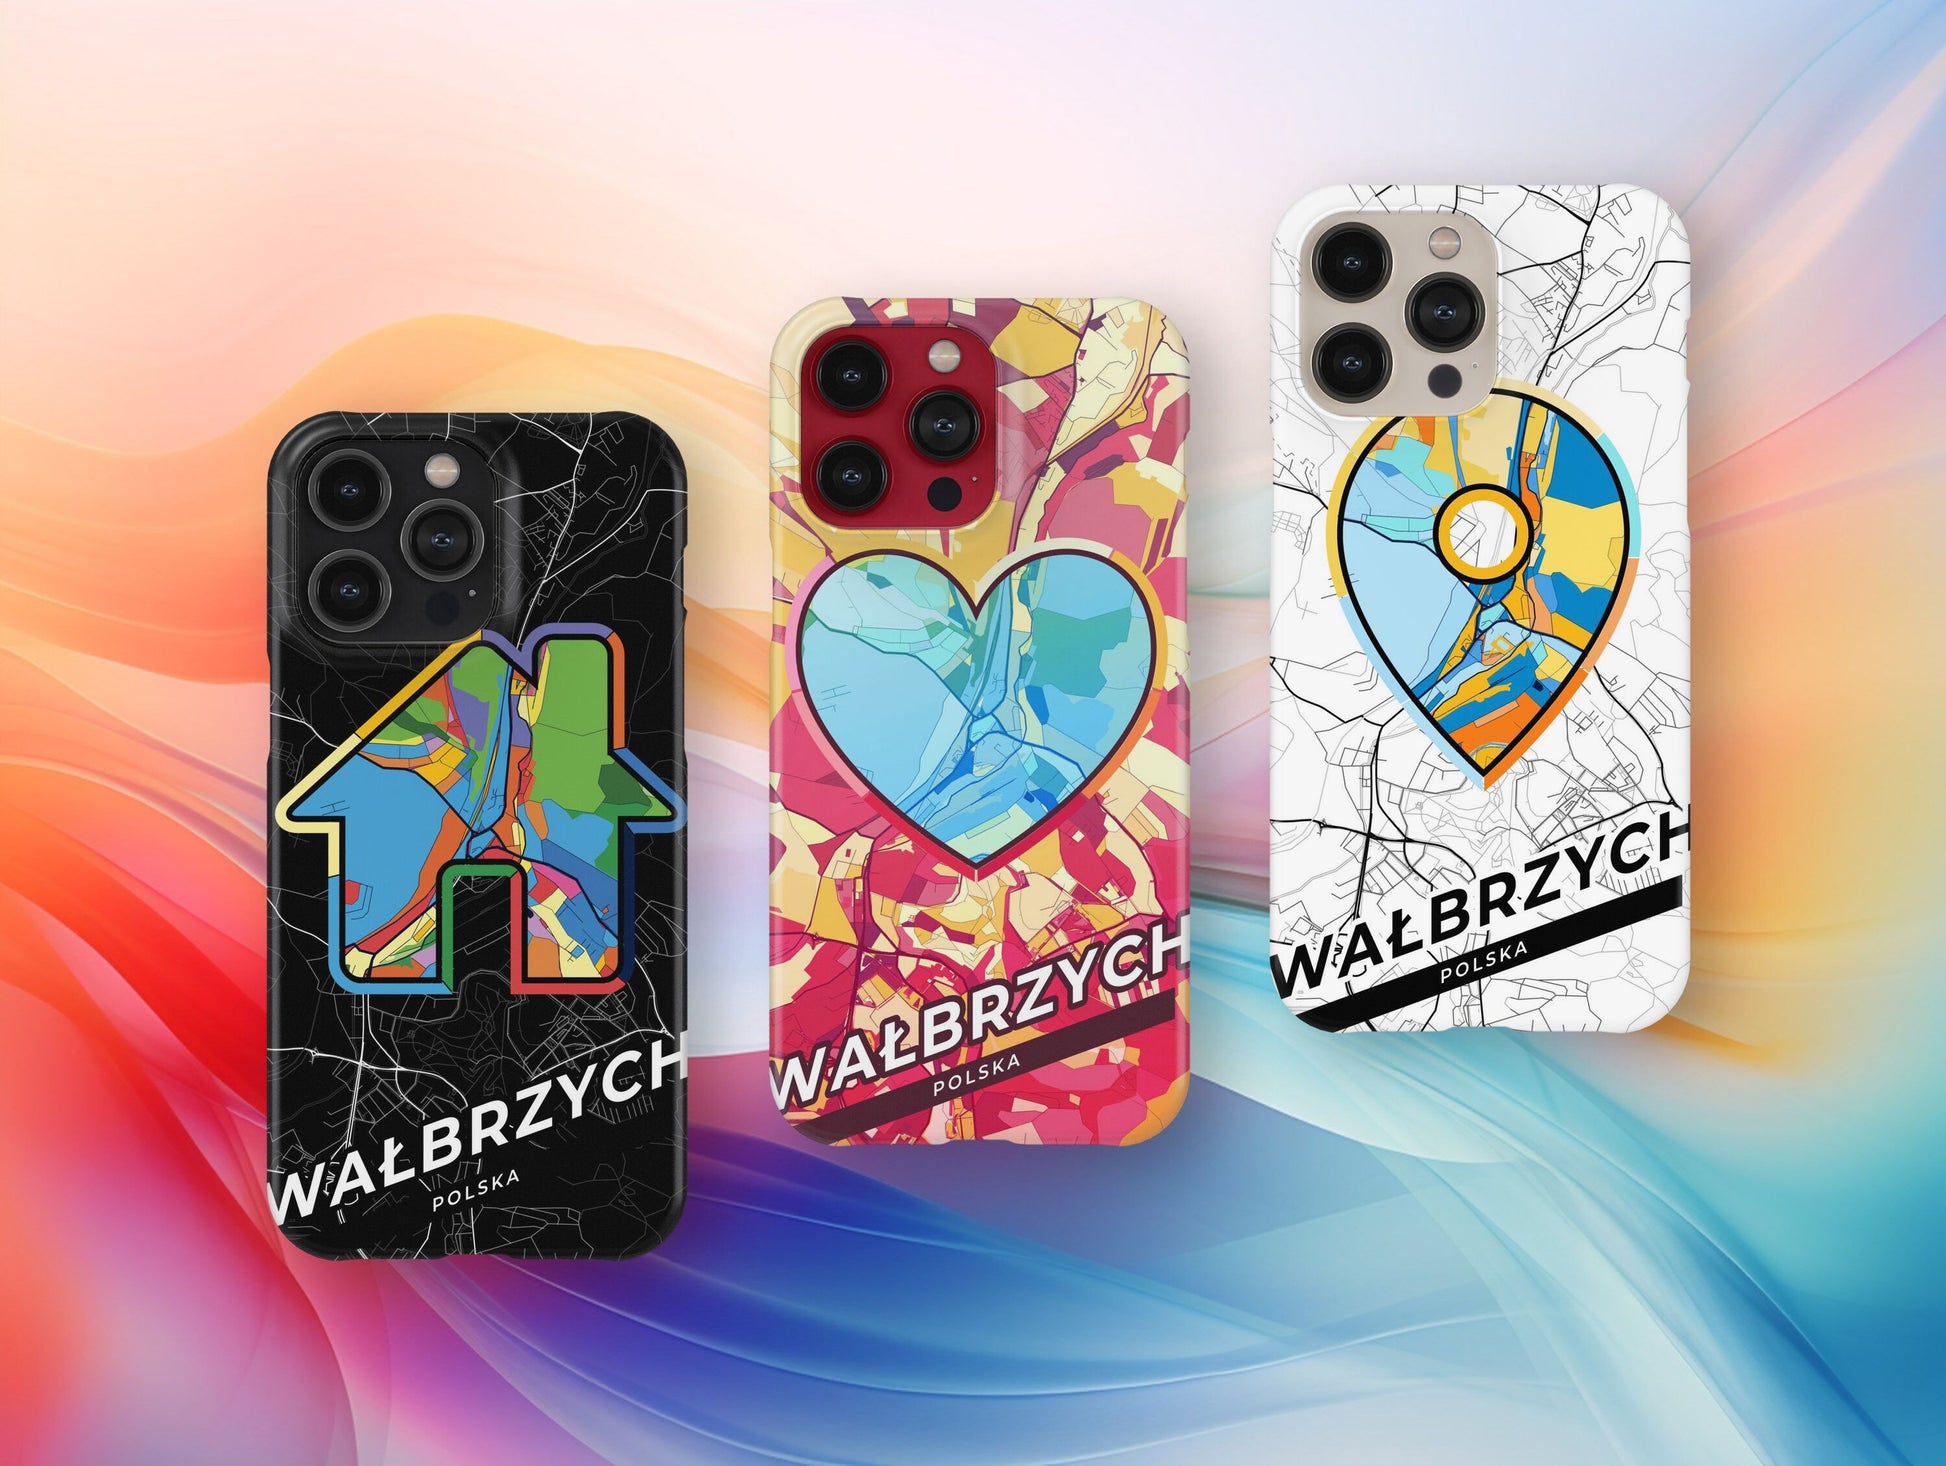 Wałbrzych Poland slim phone case with colorful icon